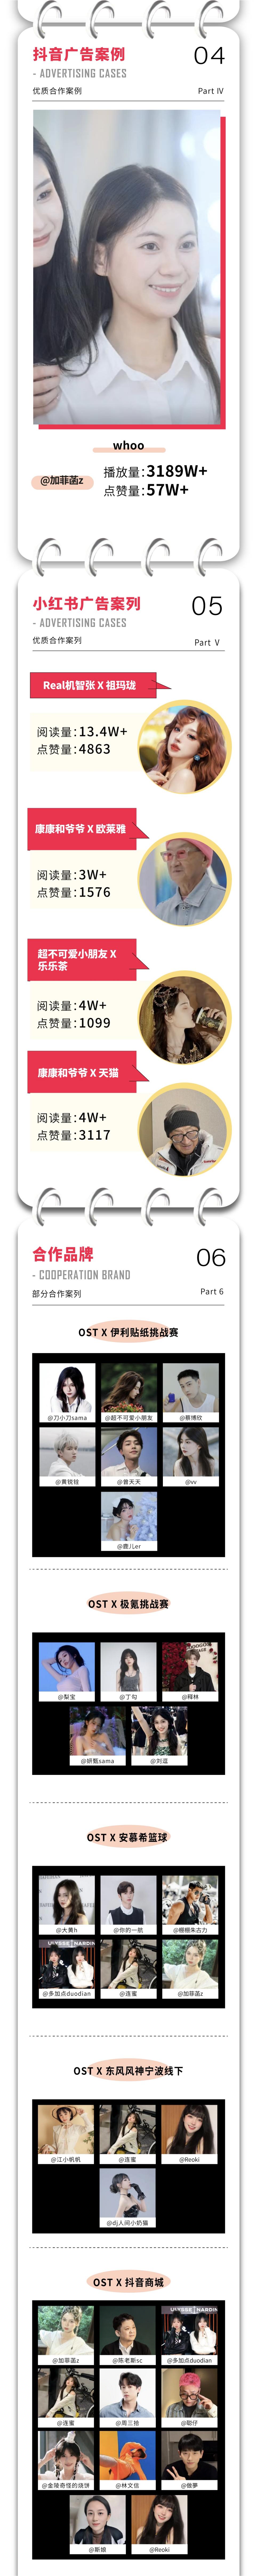 OST传媒10月广告案例第1张